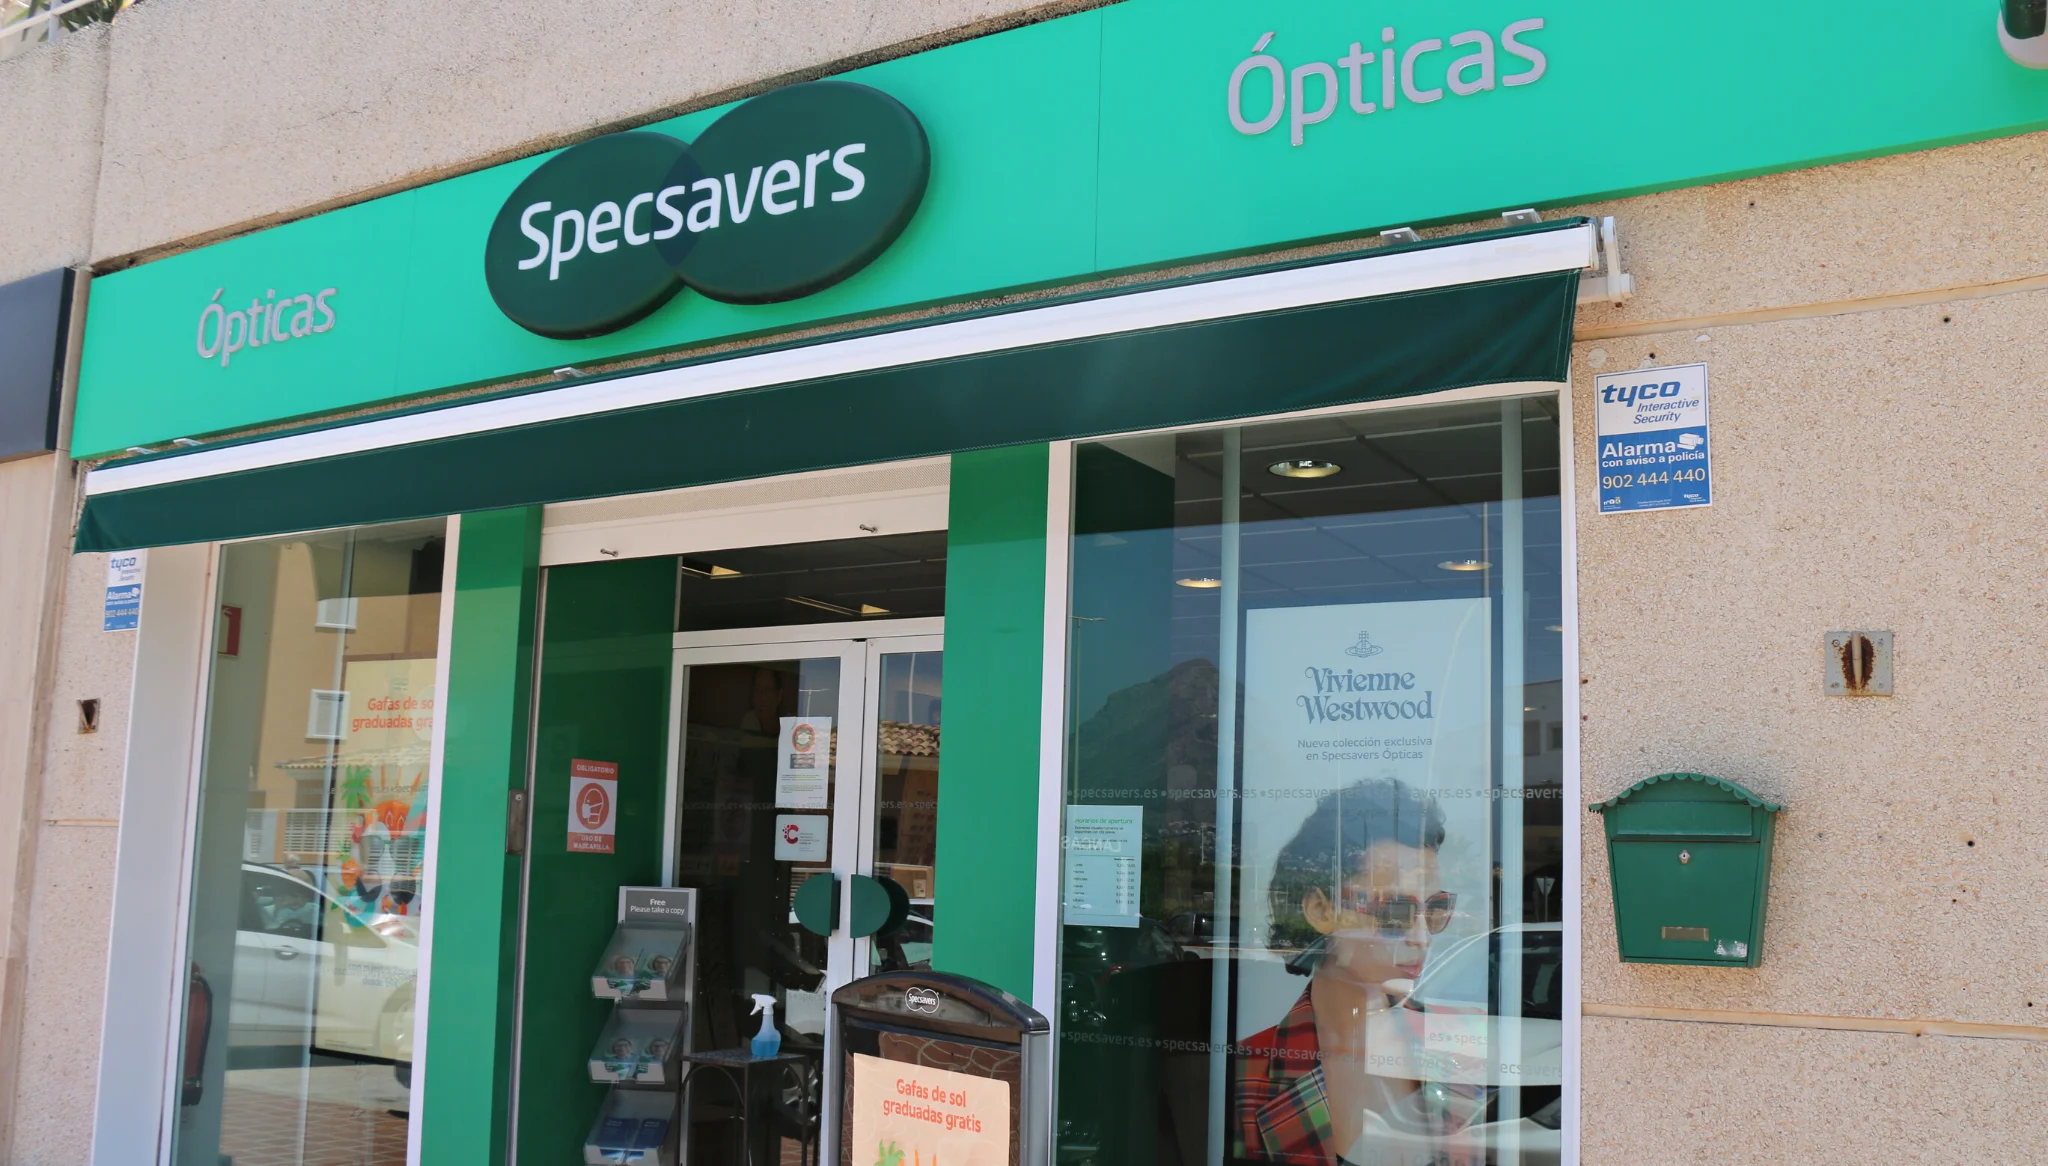 Specsavers Ópticas